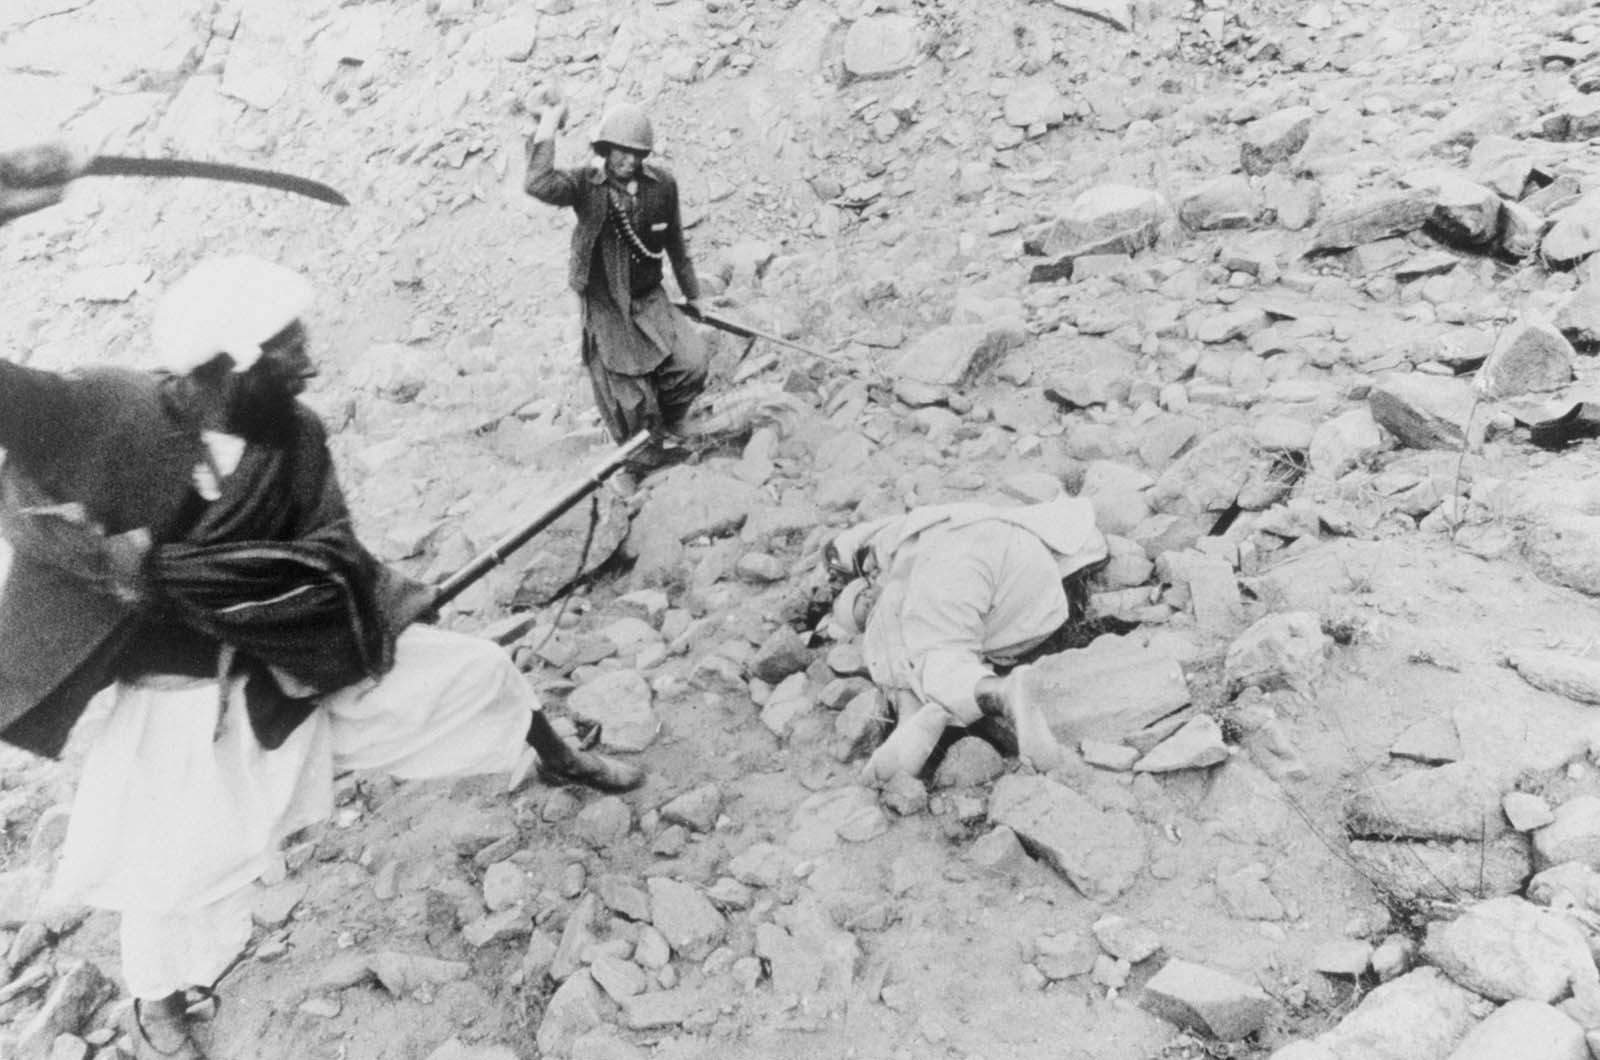 L'exécution d'un traître au cours de la guerre en Afghanistan, 1980